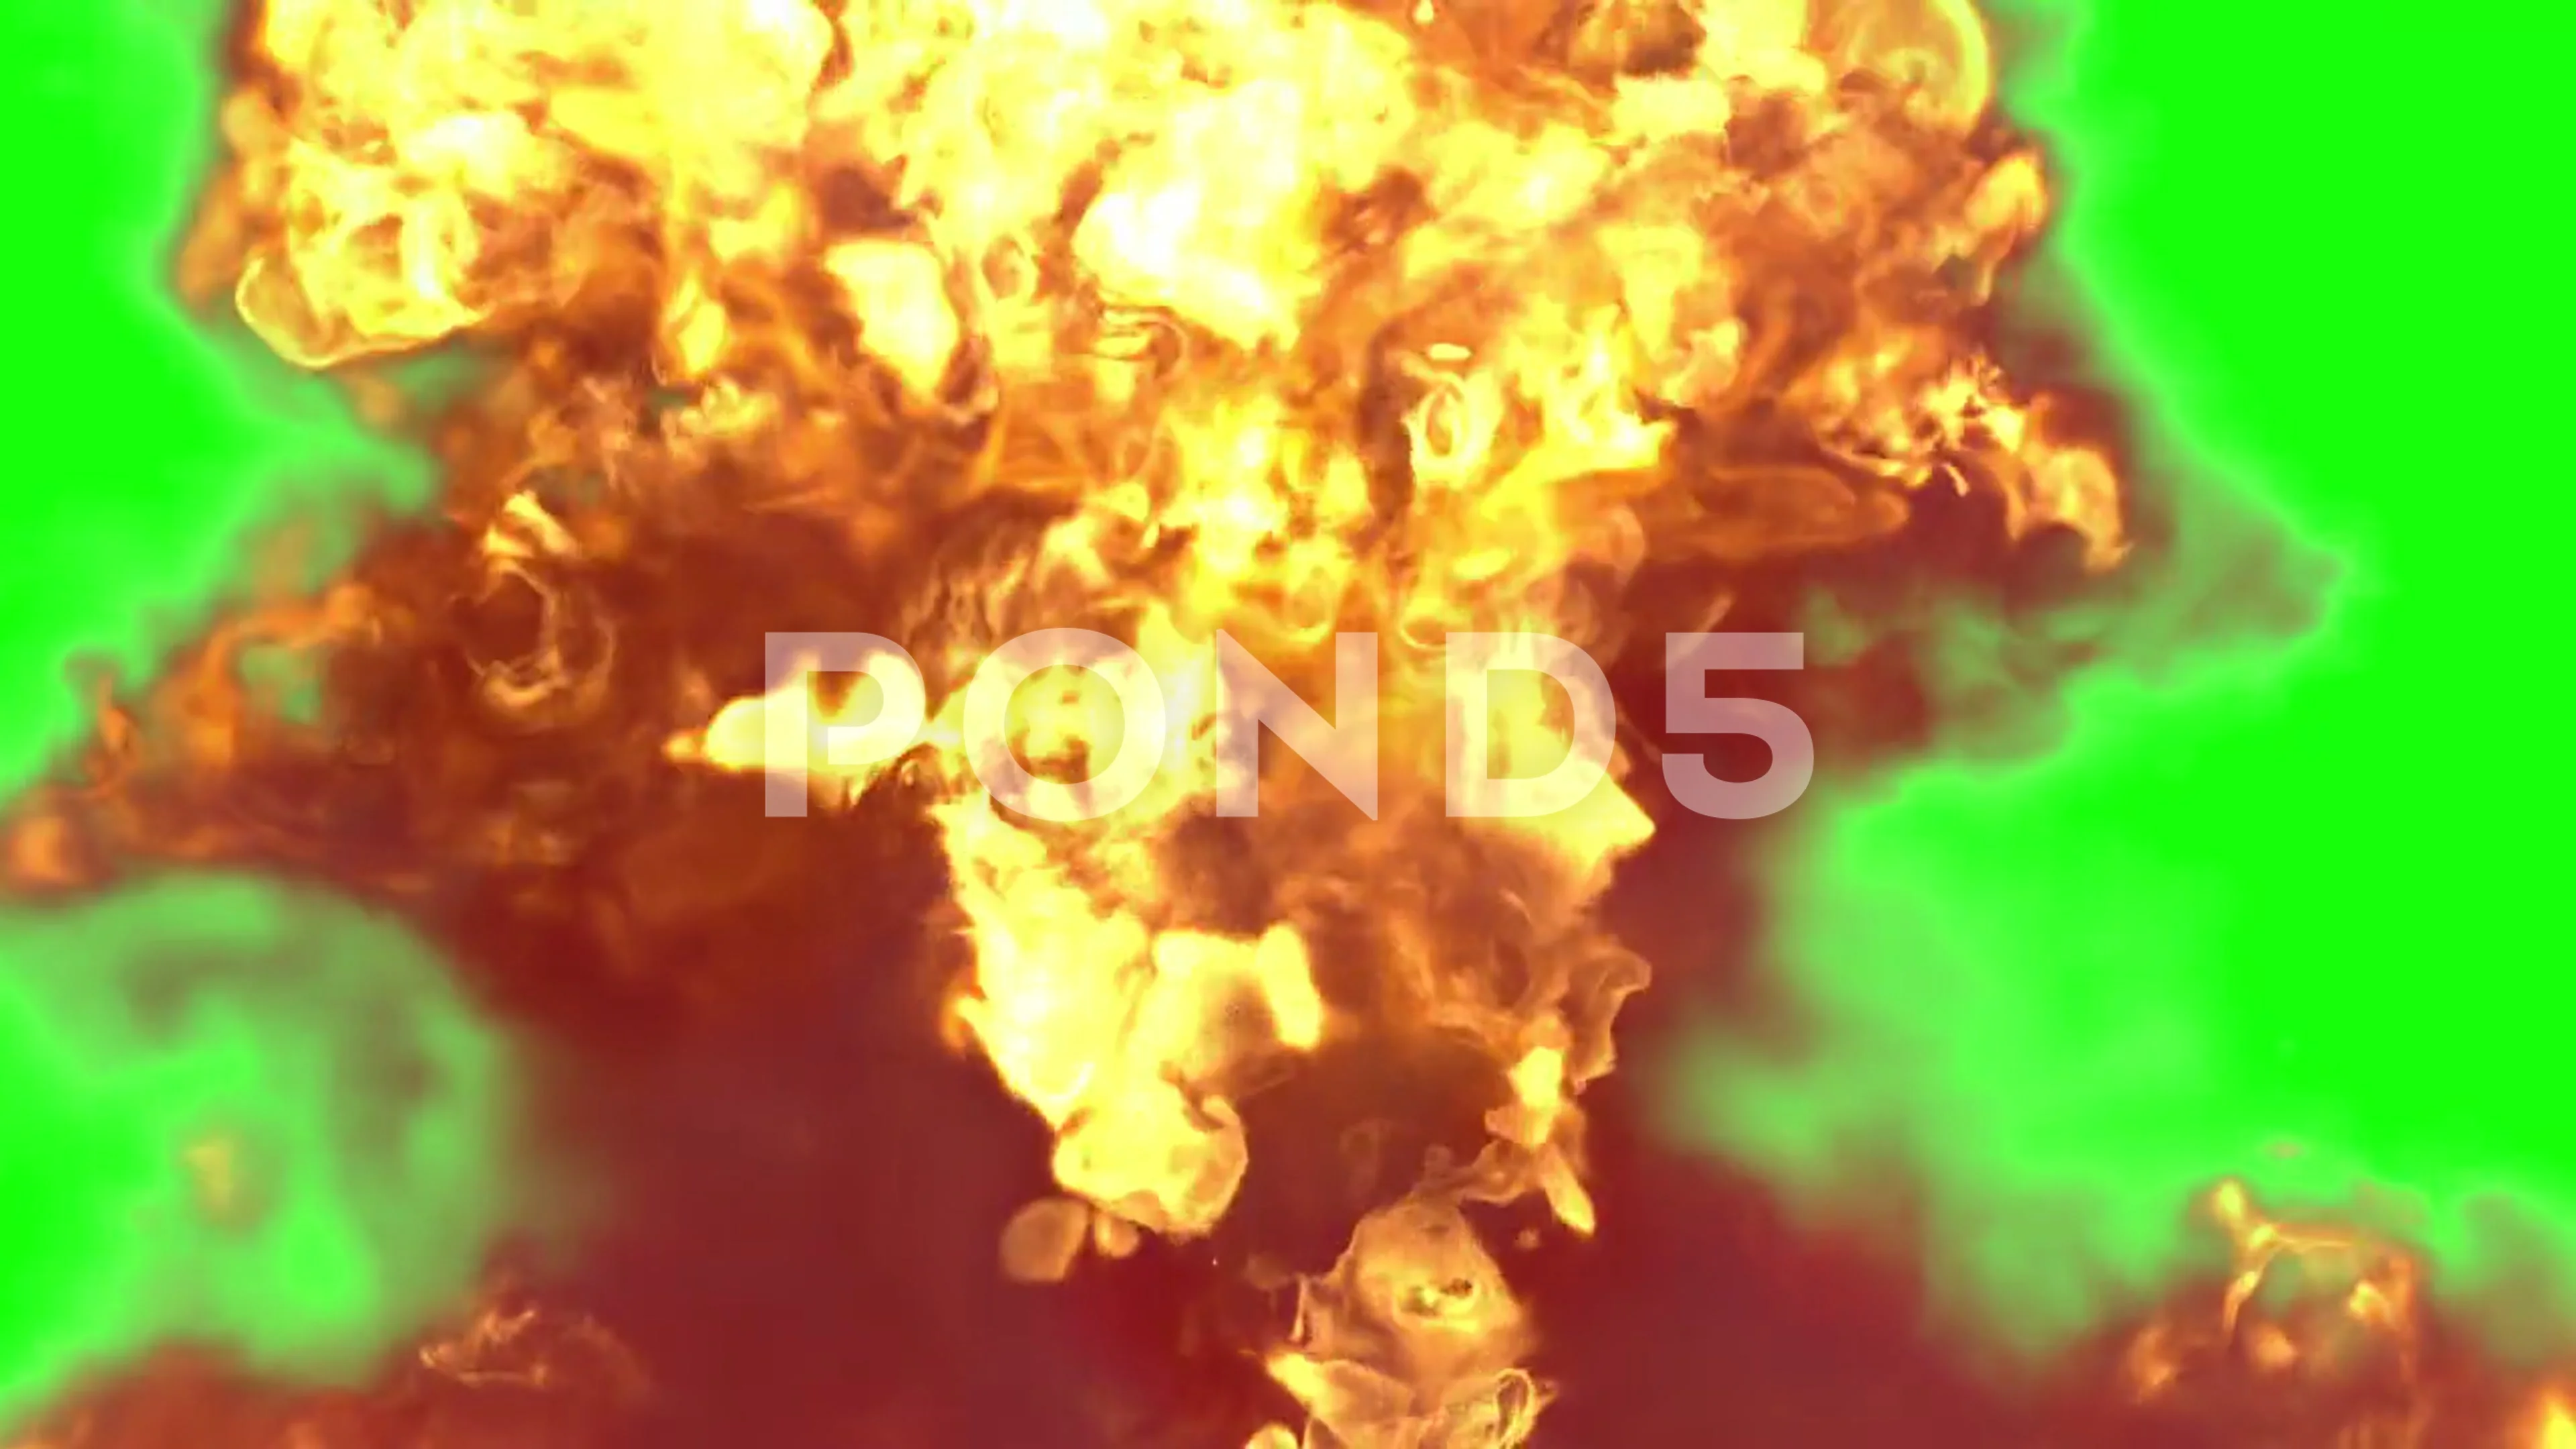 Fire Explosion: Cảm nhận sự mãnh liệt của những pha nổ lửa cháy rực trên màn hình. Với hình ảnh đầy màu sắc và chân thực, đảm bảo bạn sẽ không thể rời mắt khỏi những cảnh nổ bom, nổ pháo hoa đầy hoành tráng. Hãy cùng xem ngay!